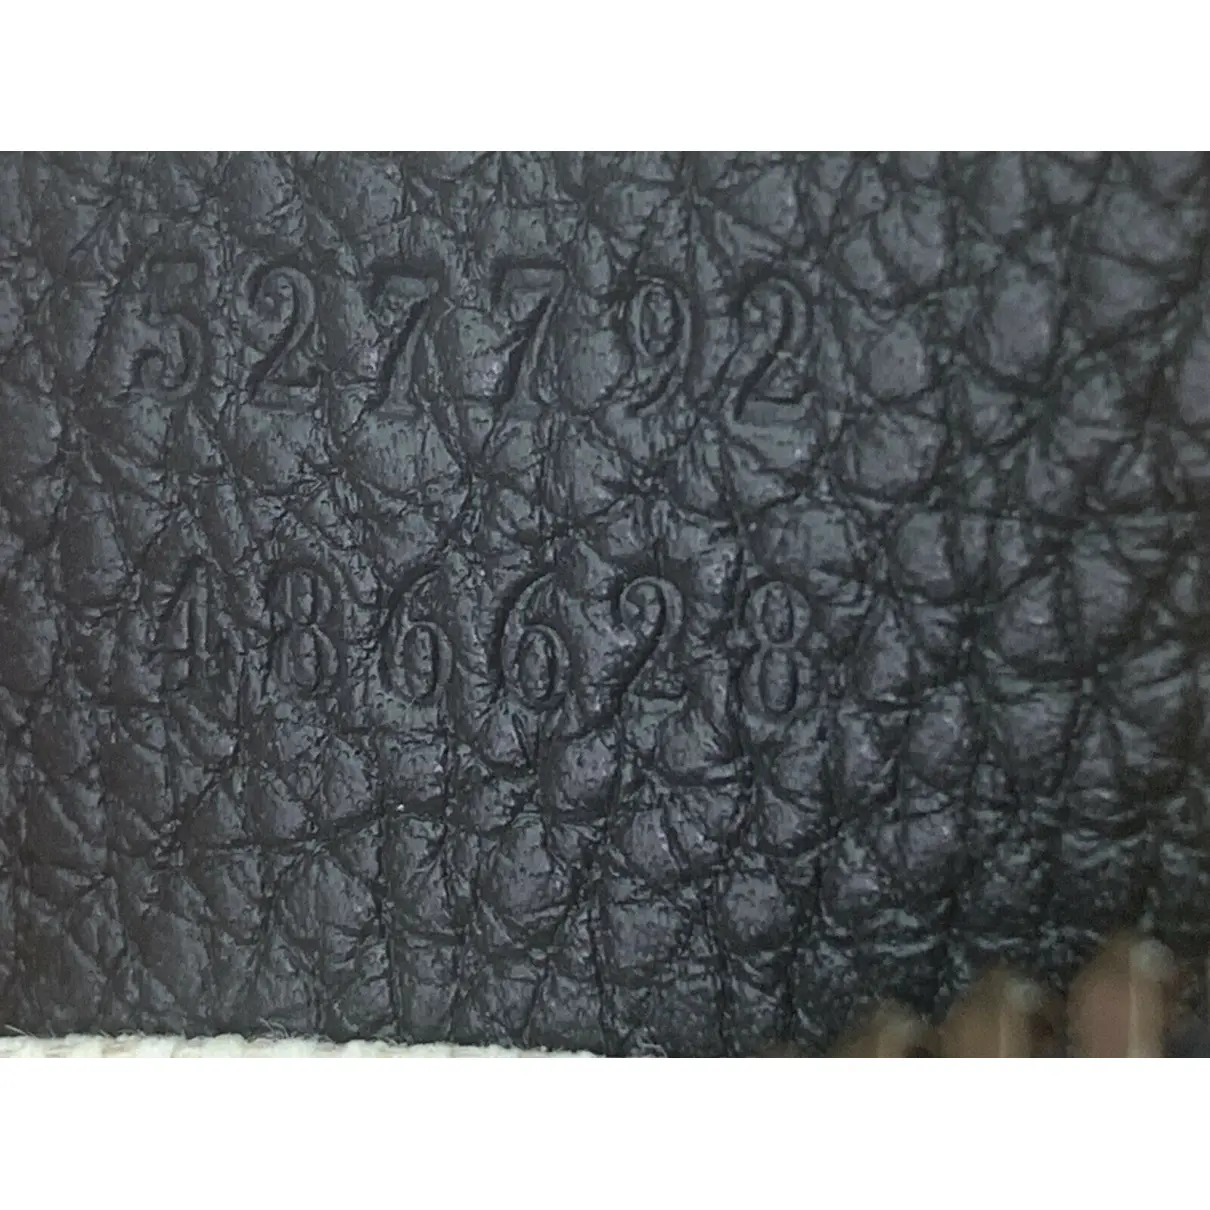 Coco capitán leather handbag Gucci